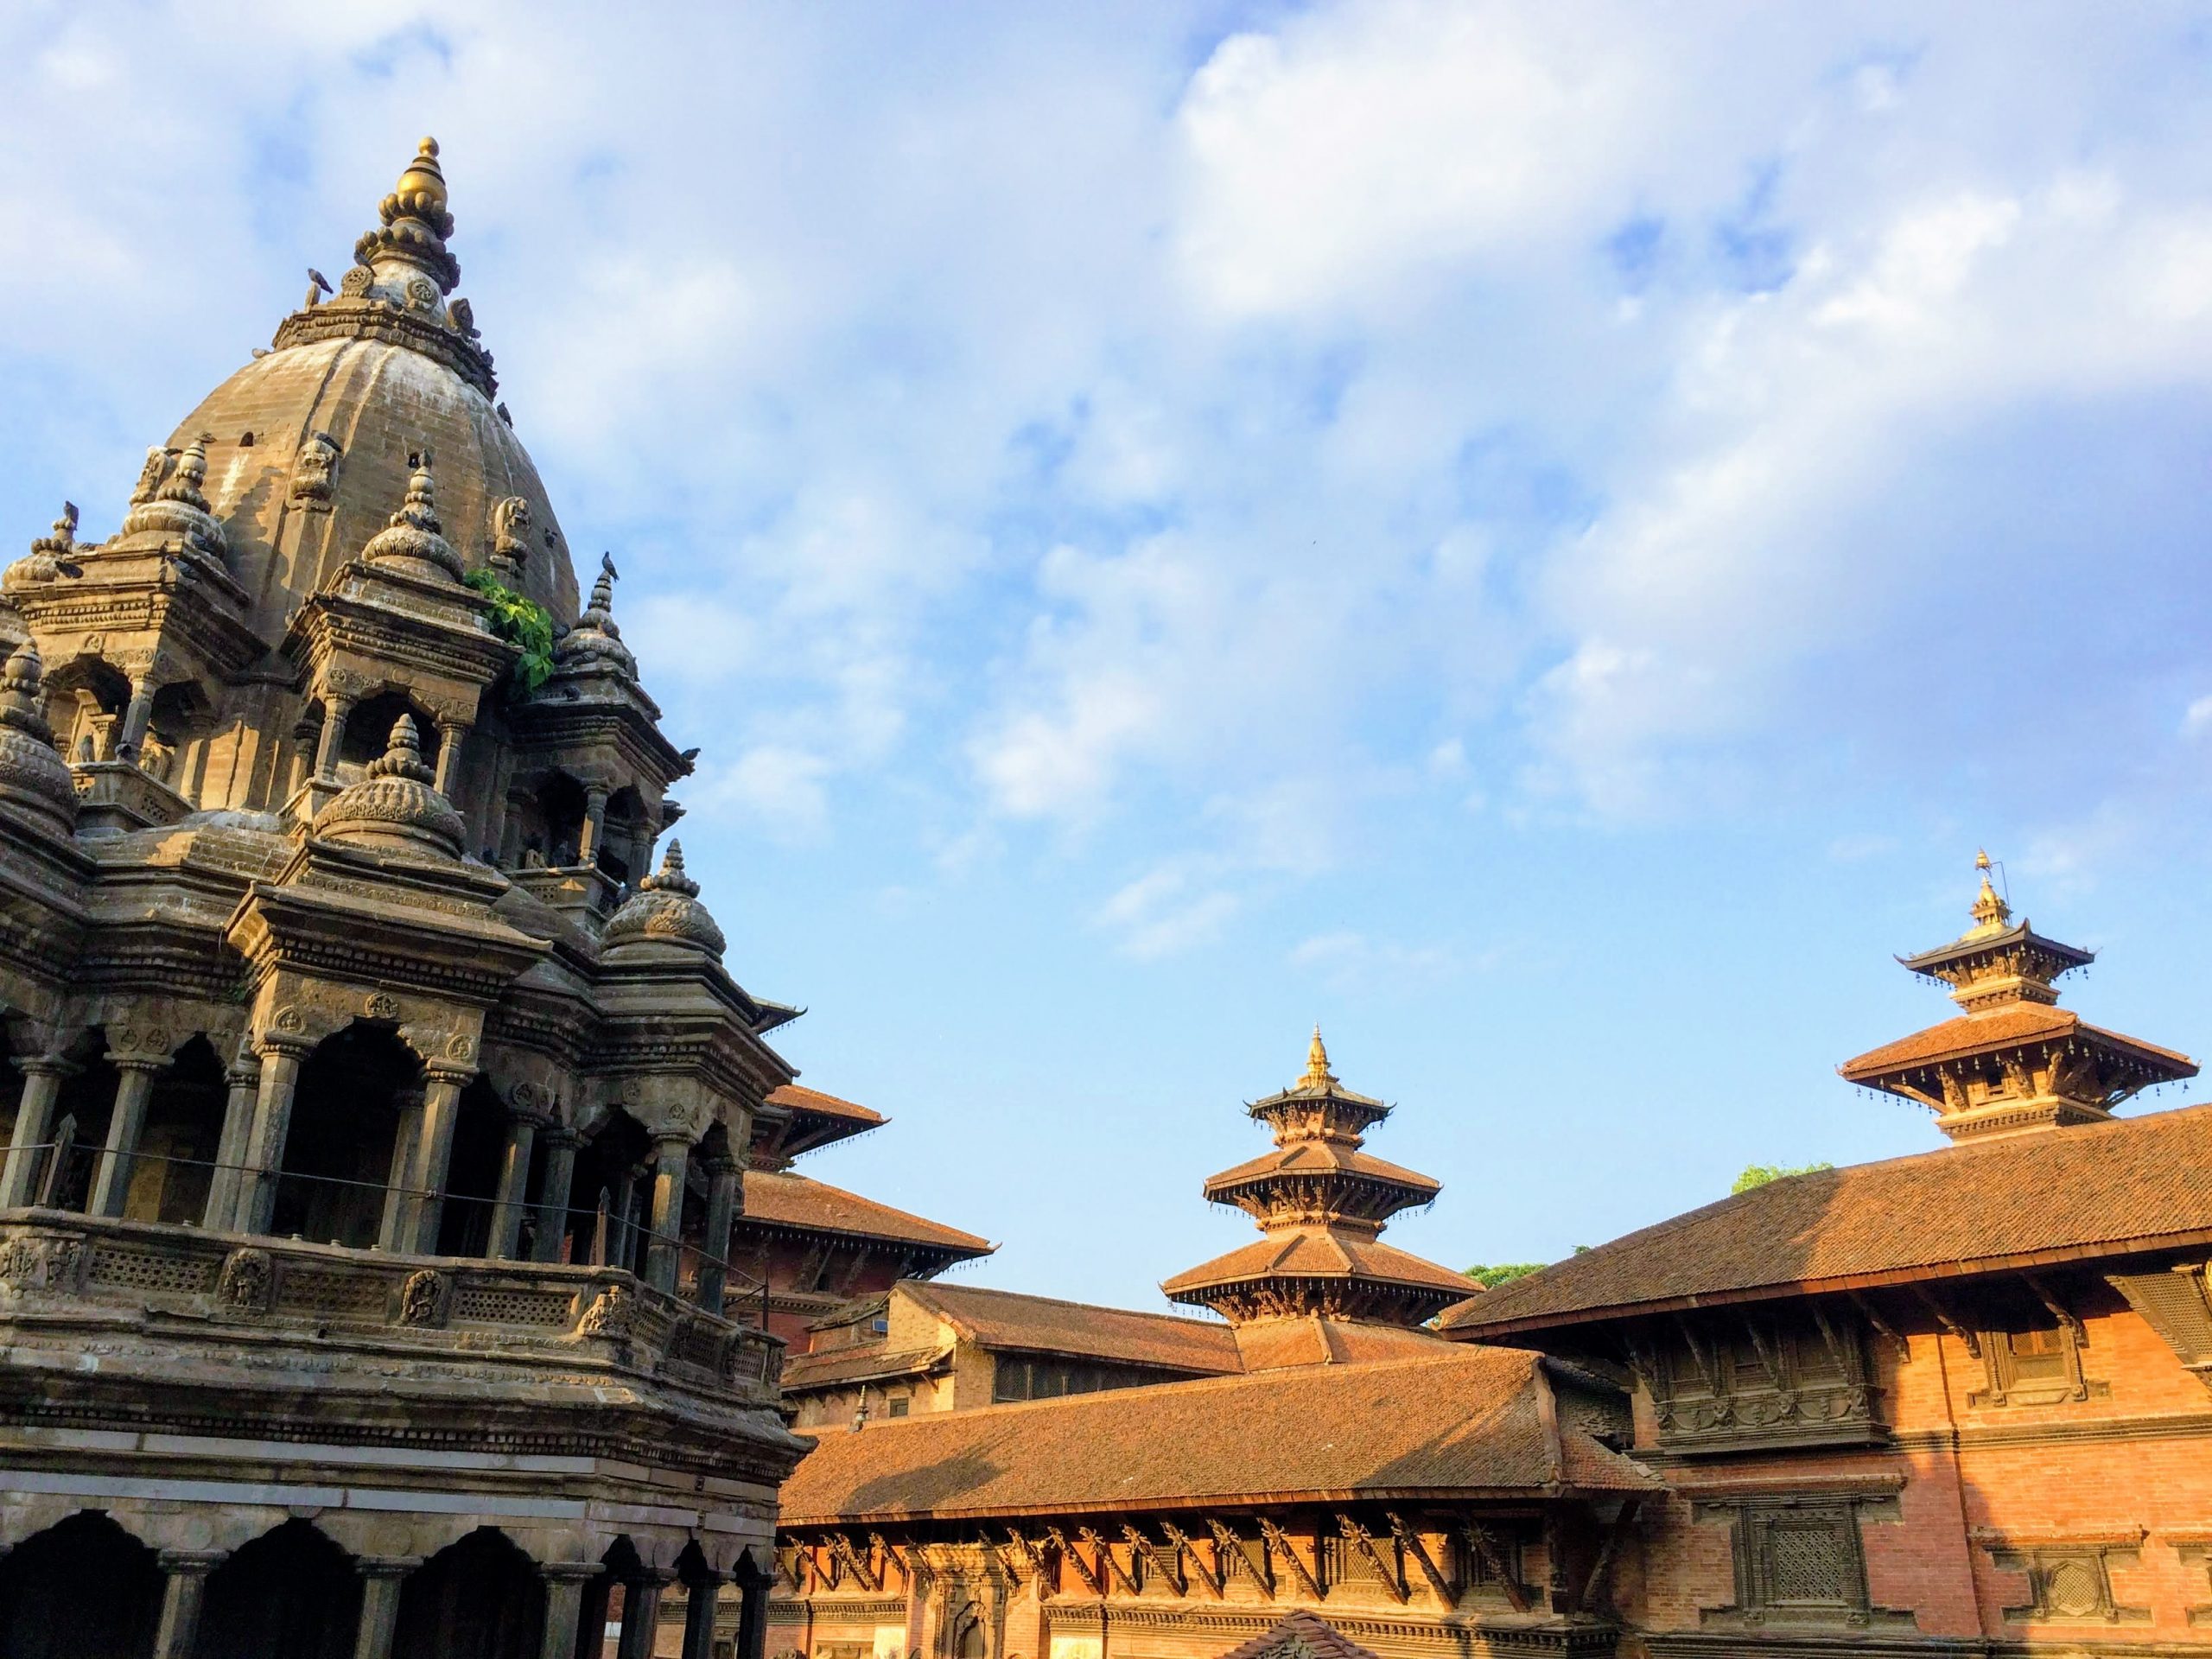 Day Tour of Durbar Squares in Kathmandu